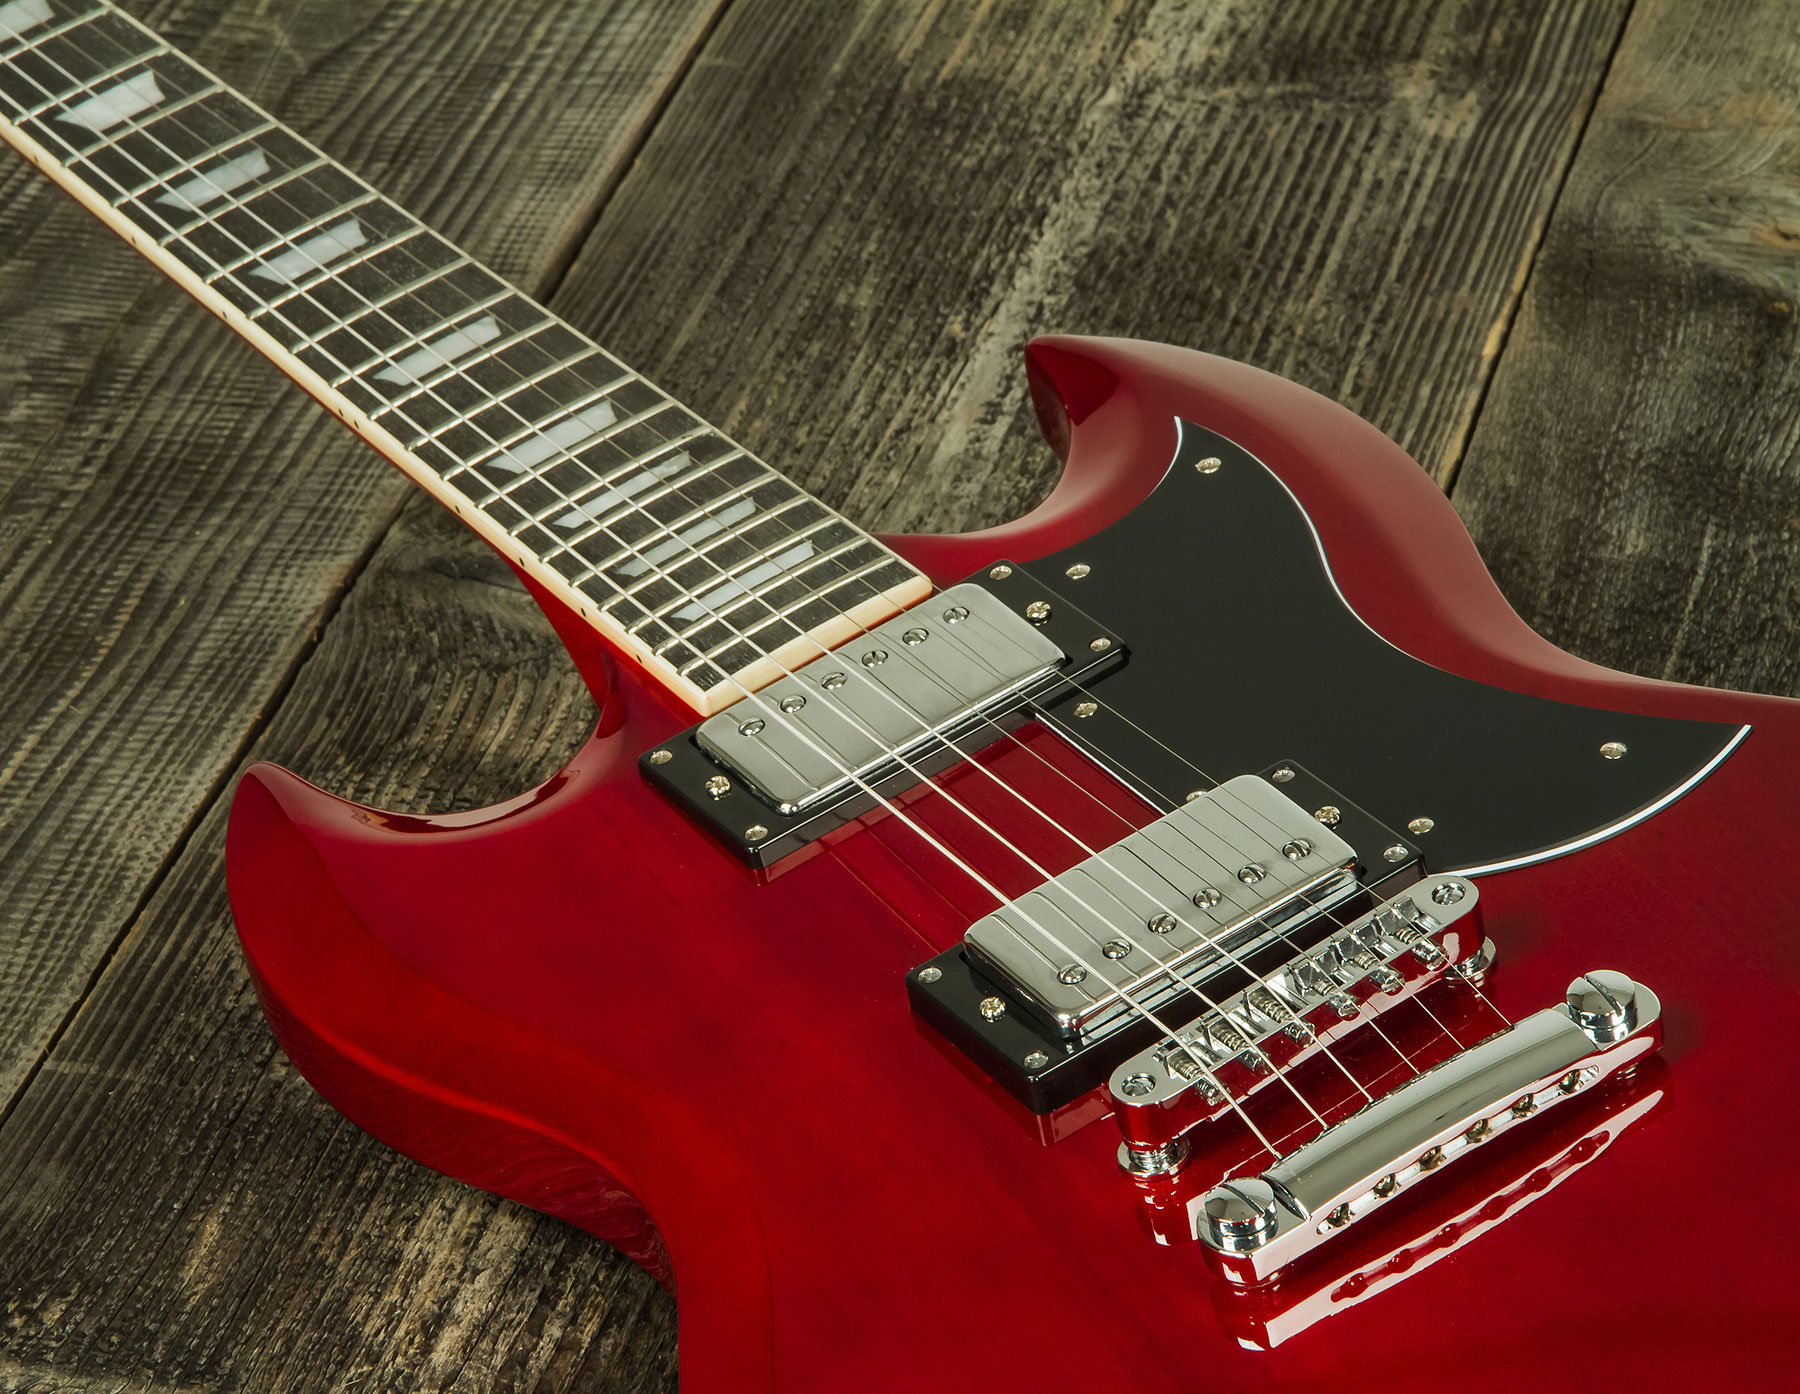 Eastone Sdc70 Hh Ht Pur - Red - Guitarra eléctrica de doble corte - Variation 3